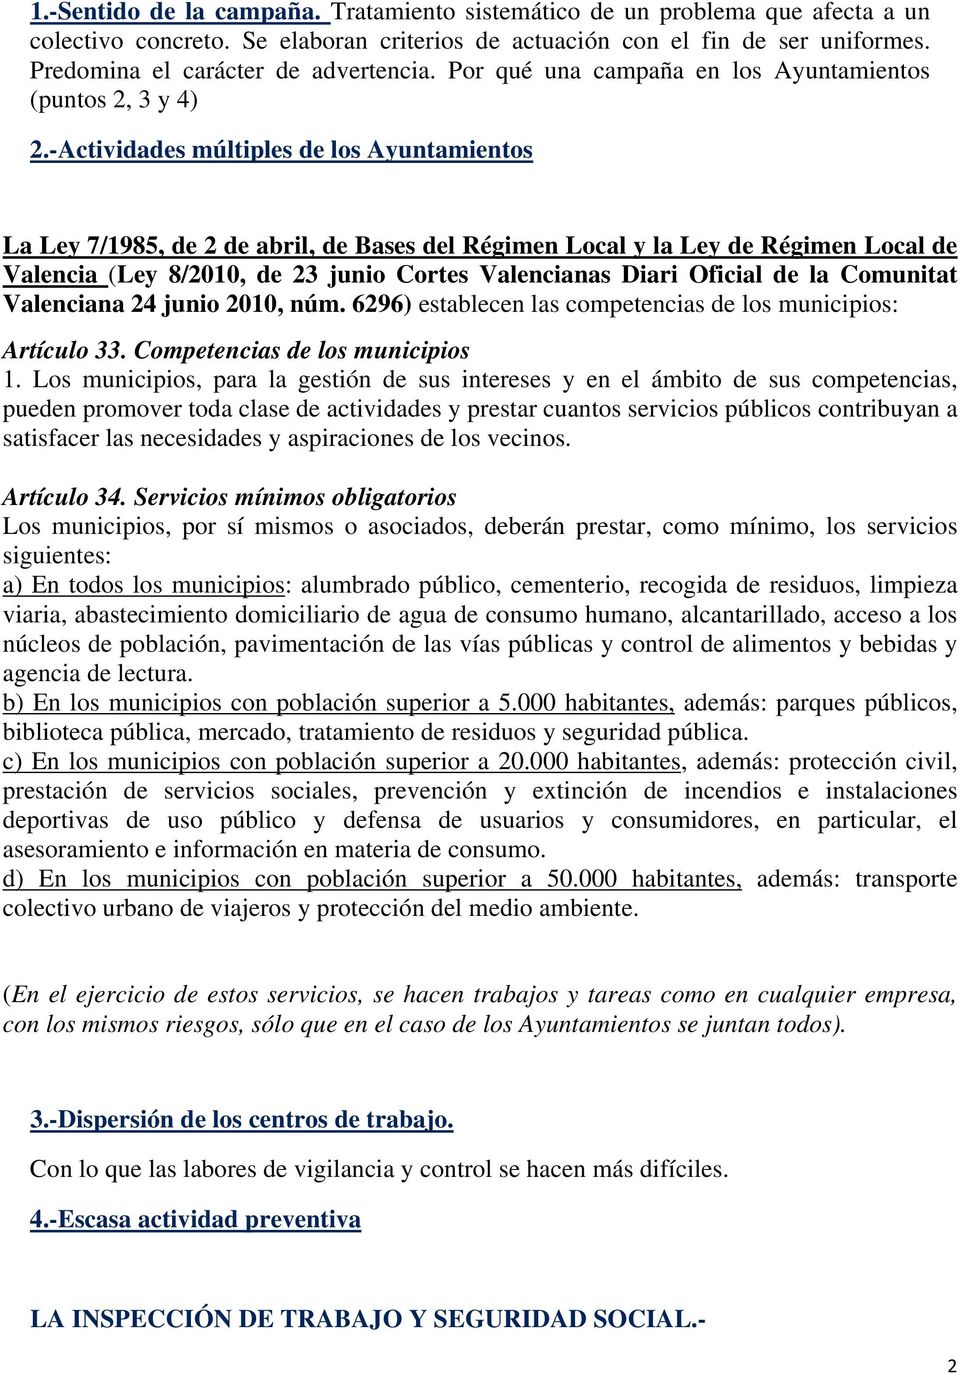 -Actividades múltiples de los Ayuntamientos La Ley 7/1985, de 2 de abril, de Bases del Régimen Local y la Ley de Régimen Local de Valencia (Ley 8/2010, de 23 junio Cortes Valencianas Diari Oficial de